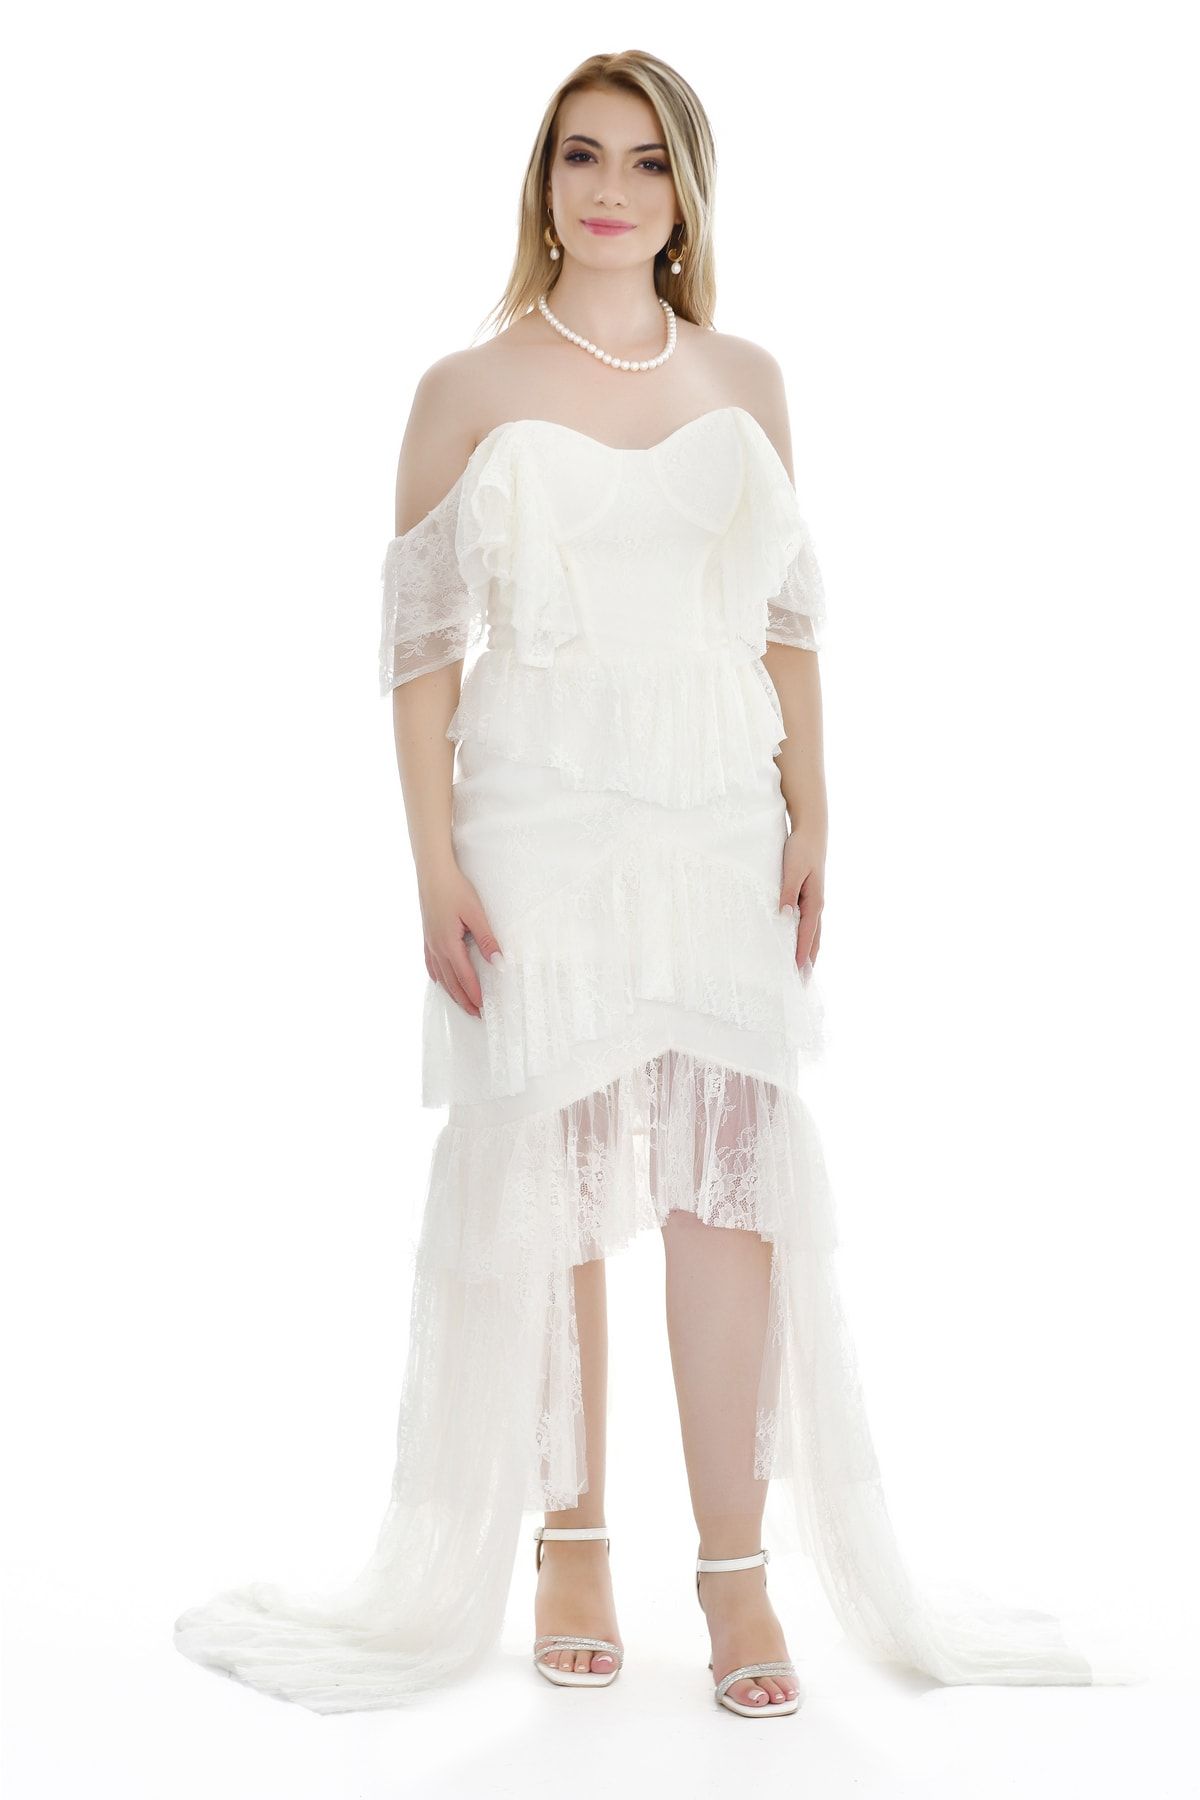 Kulis Beyaz Kayık Yaka Dantelli Fırfırlı Önü Kısa Arkası Uzun Abiye ve Nikah Elbisesi Mezuniyet Elbisesi